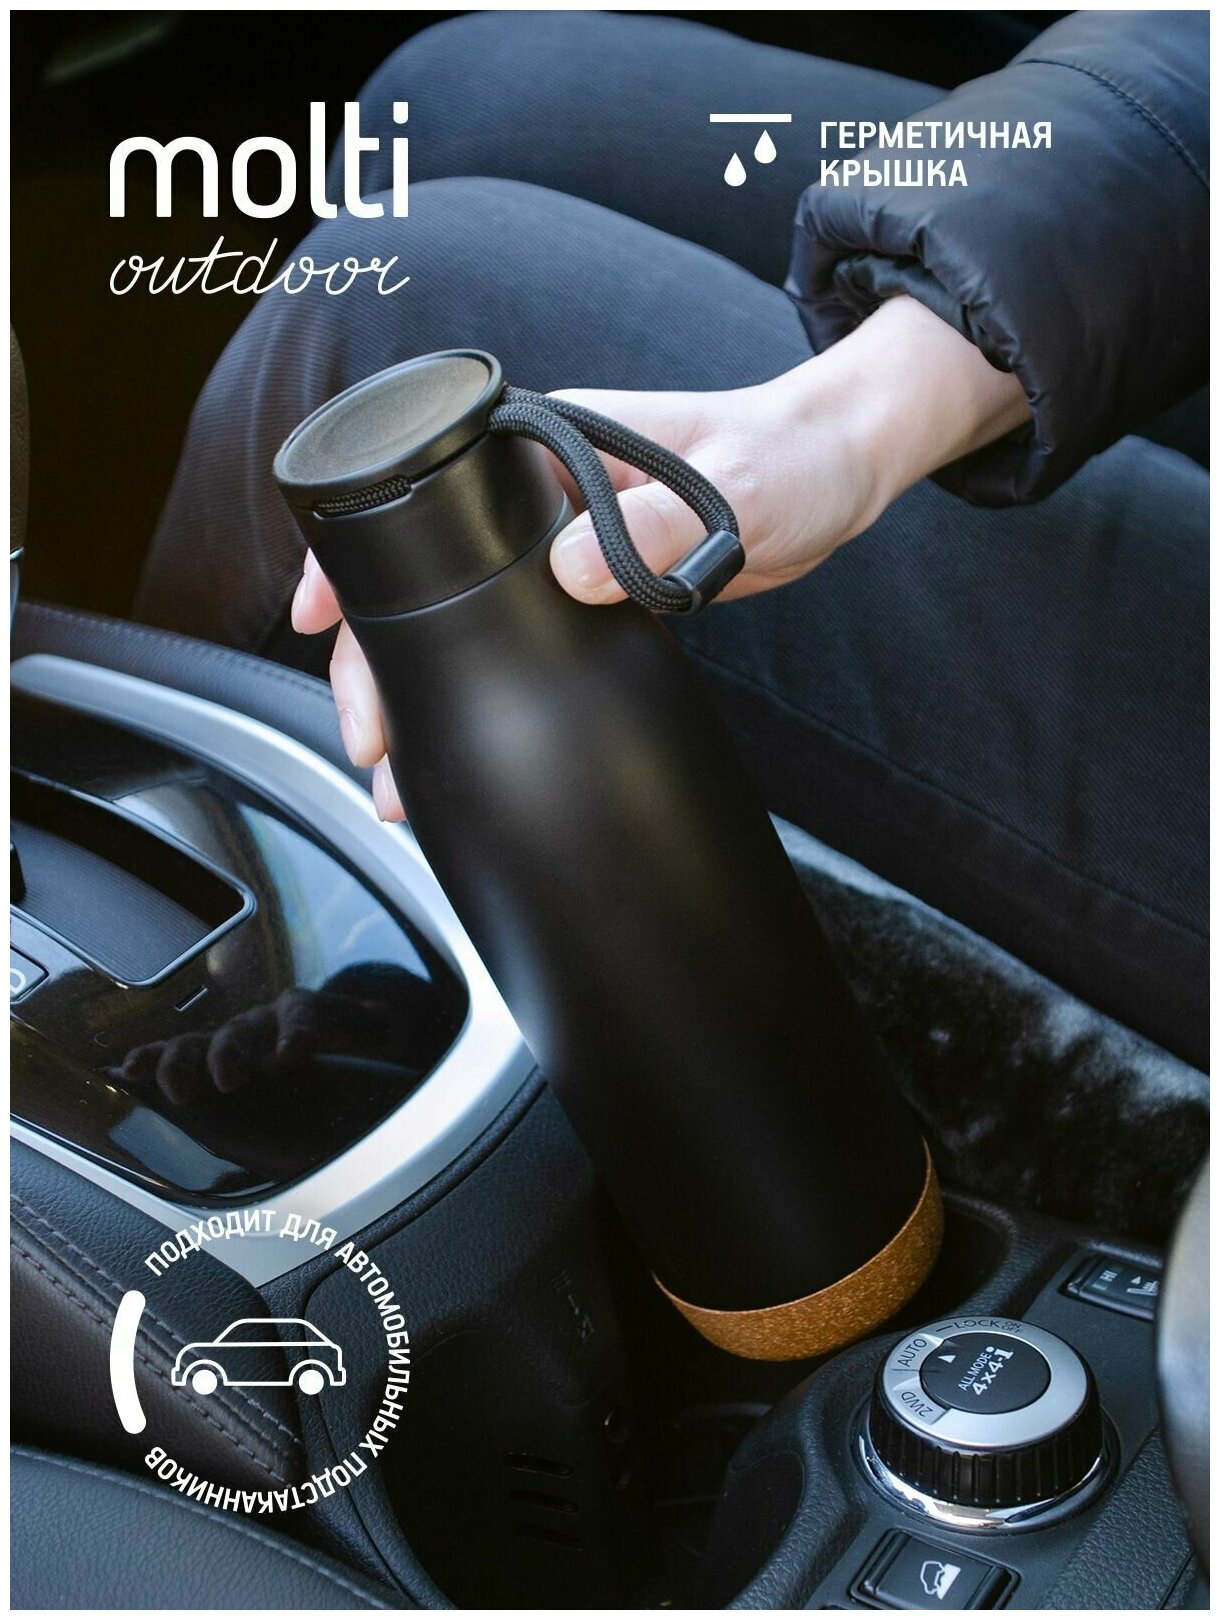 Термобутылка для напитков чая воды вакуумная термос стальной с крышкой Steady походная для автомобиля отдыха на природе занятием спортом, черная 0,5 л.